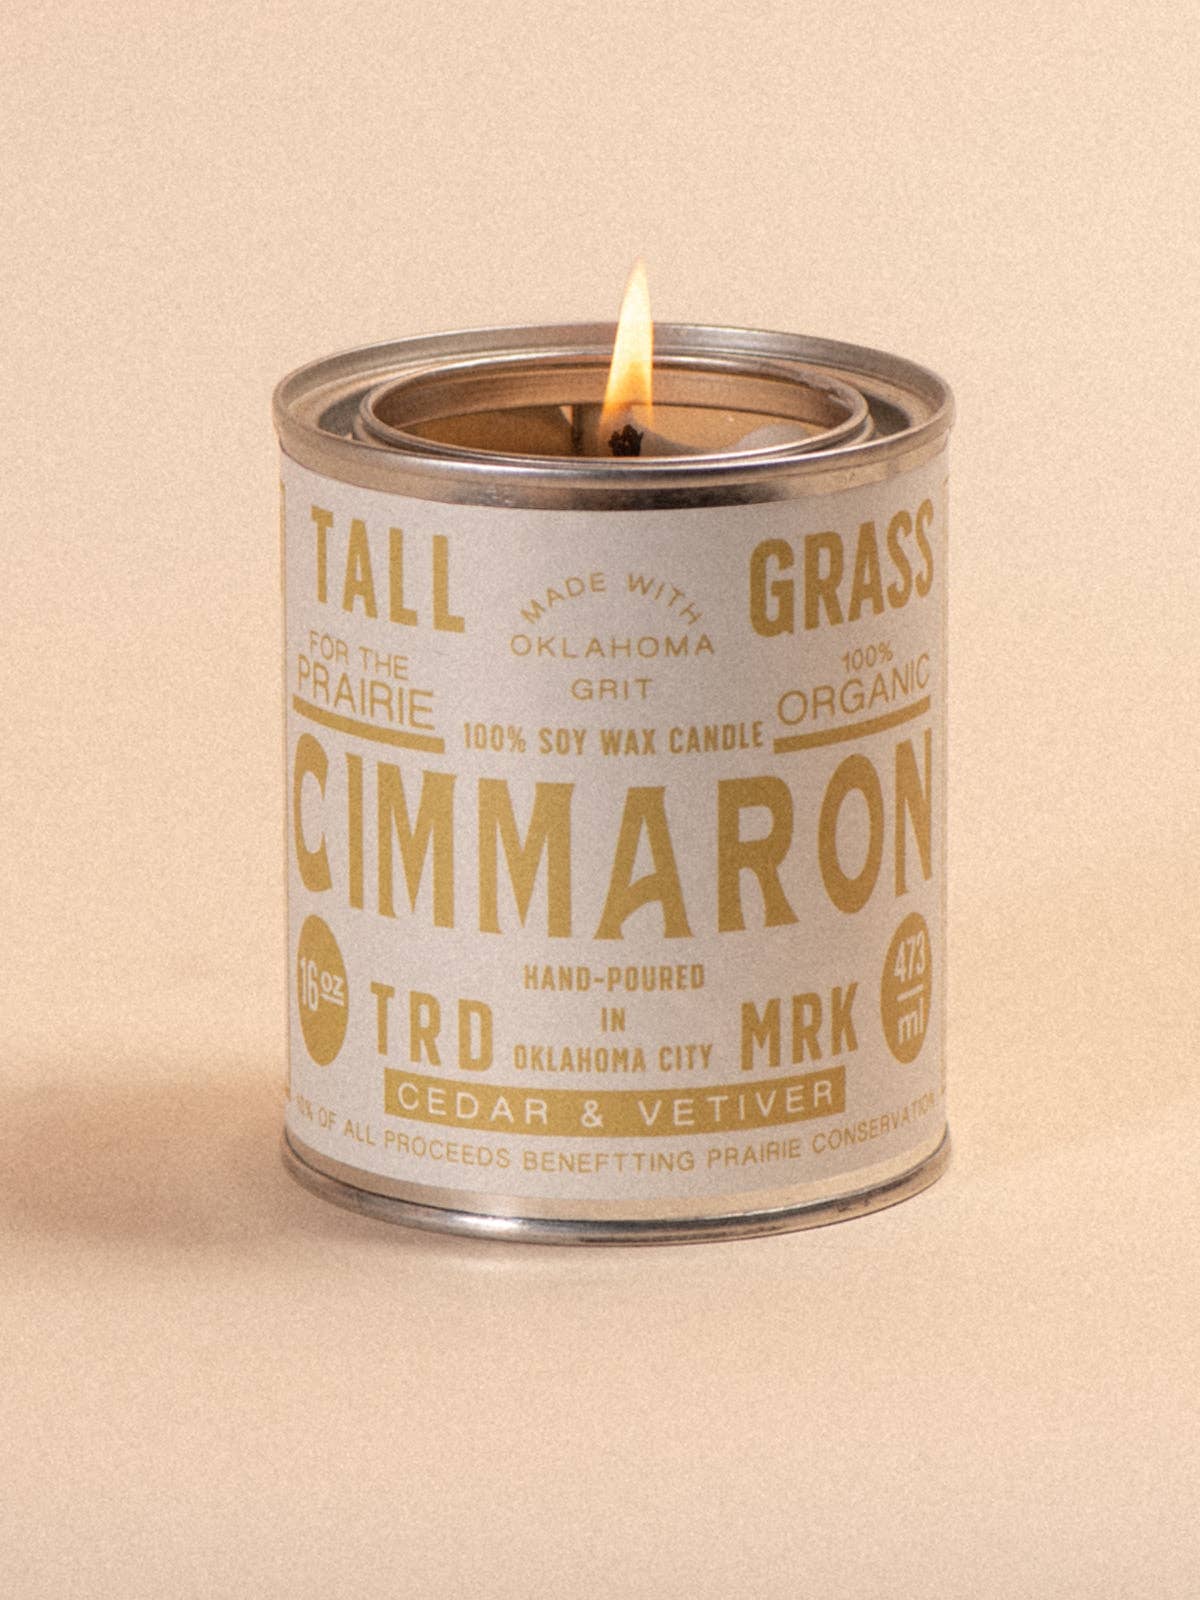 Cimmaron: Cedar + Vetiver Soy Wax Candle: 16 oz